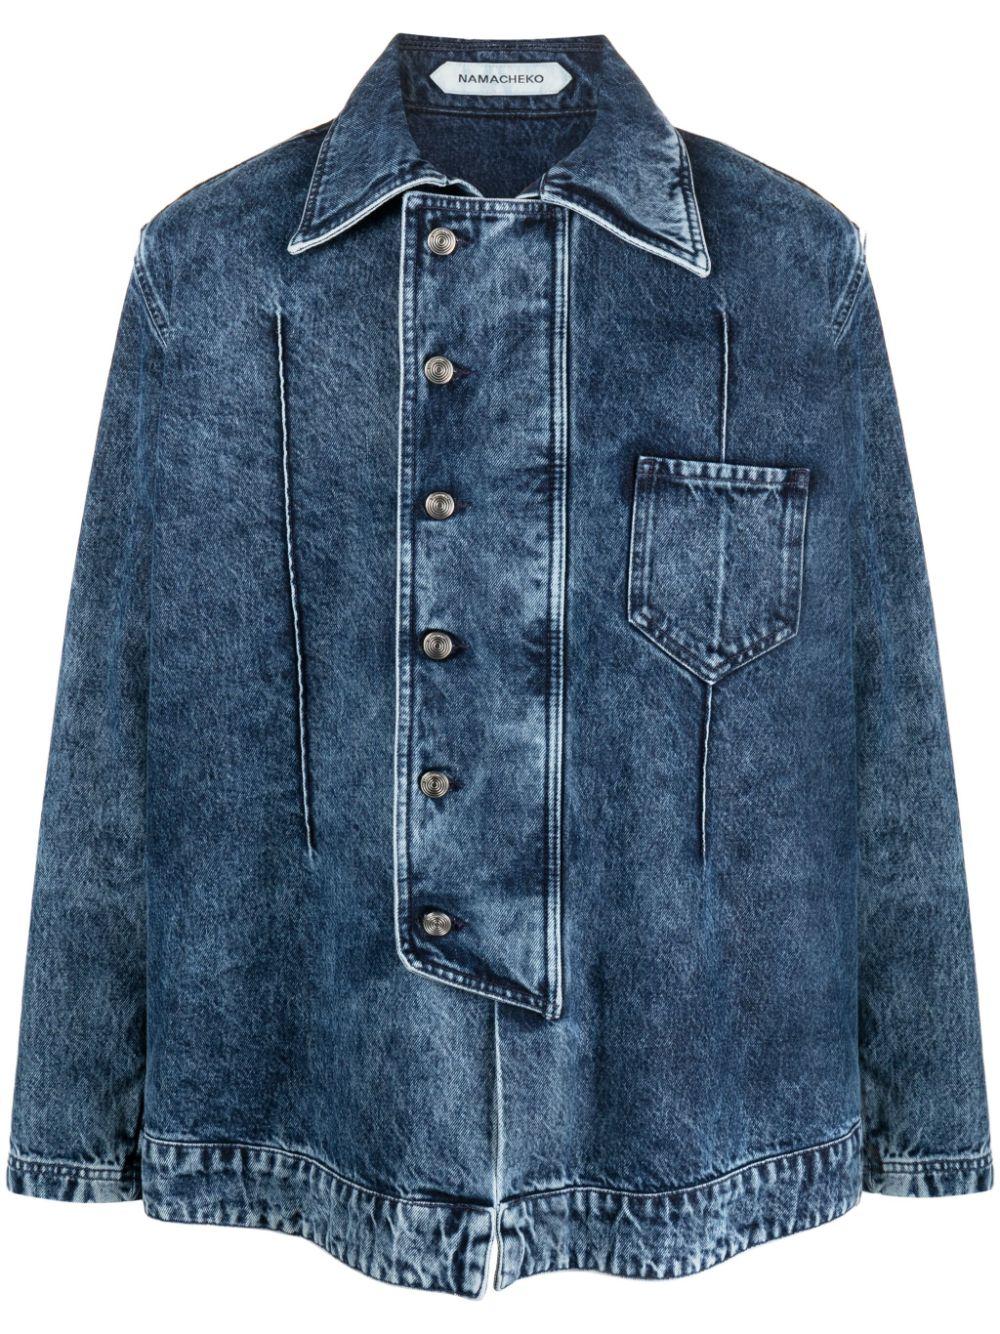 NAMACHEKO Manni Cotton Denim Jacket in Blue for Men | Lyst